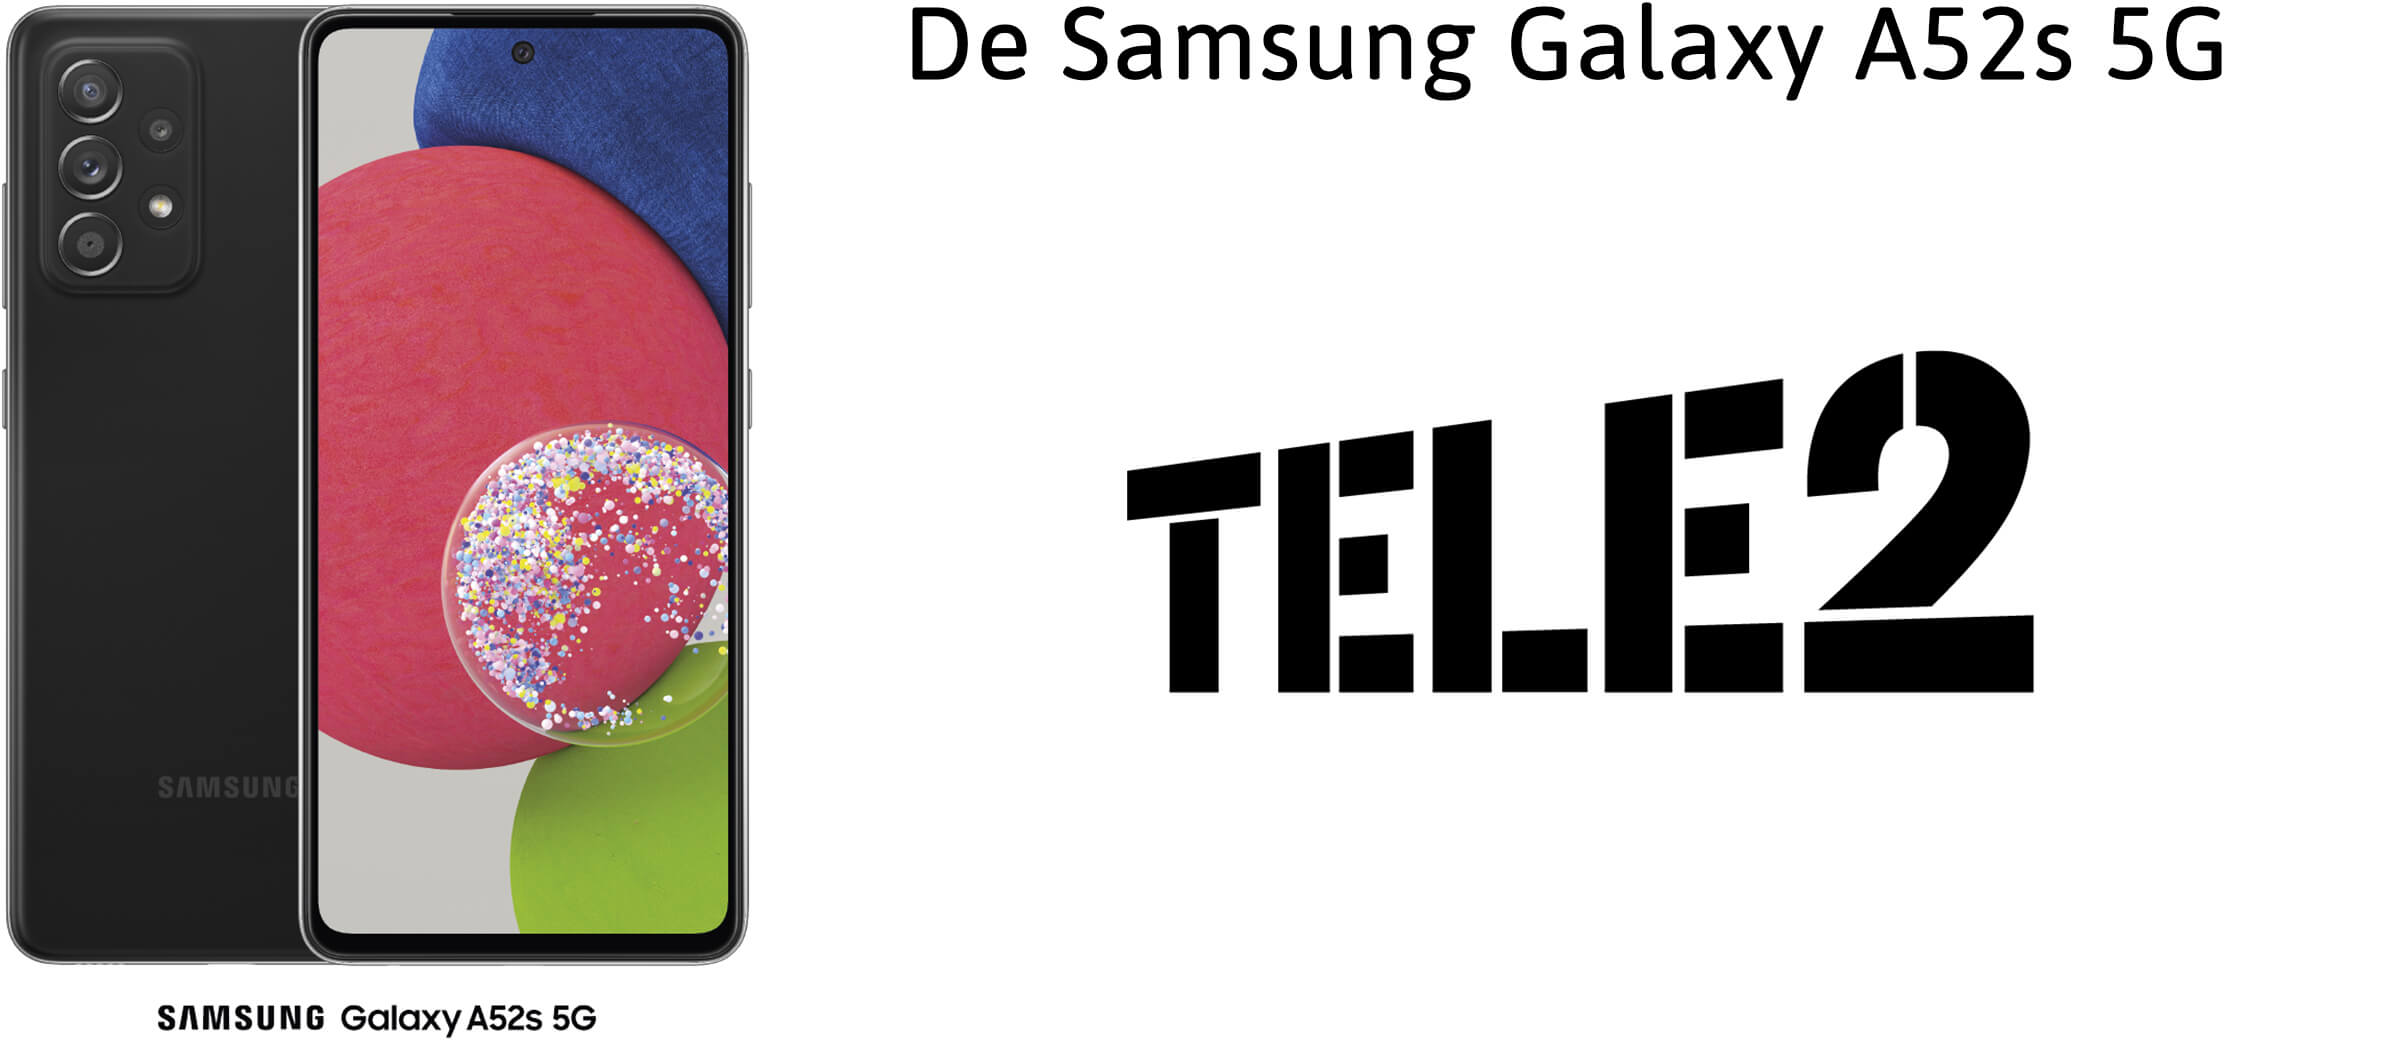 Samsung Galaxy A52s met Tele2-abonnement